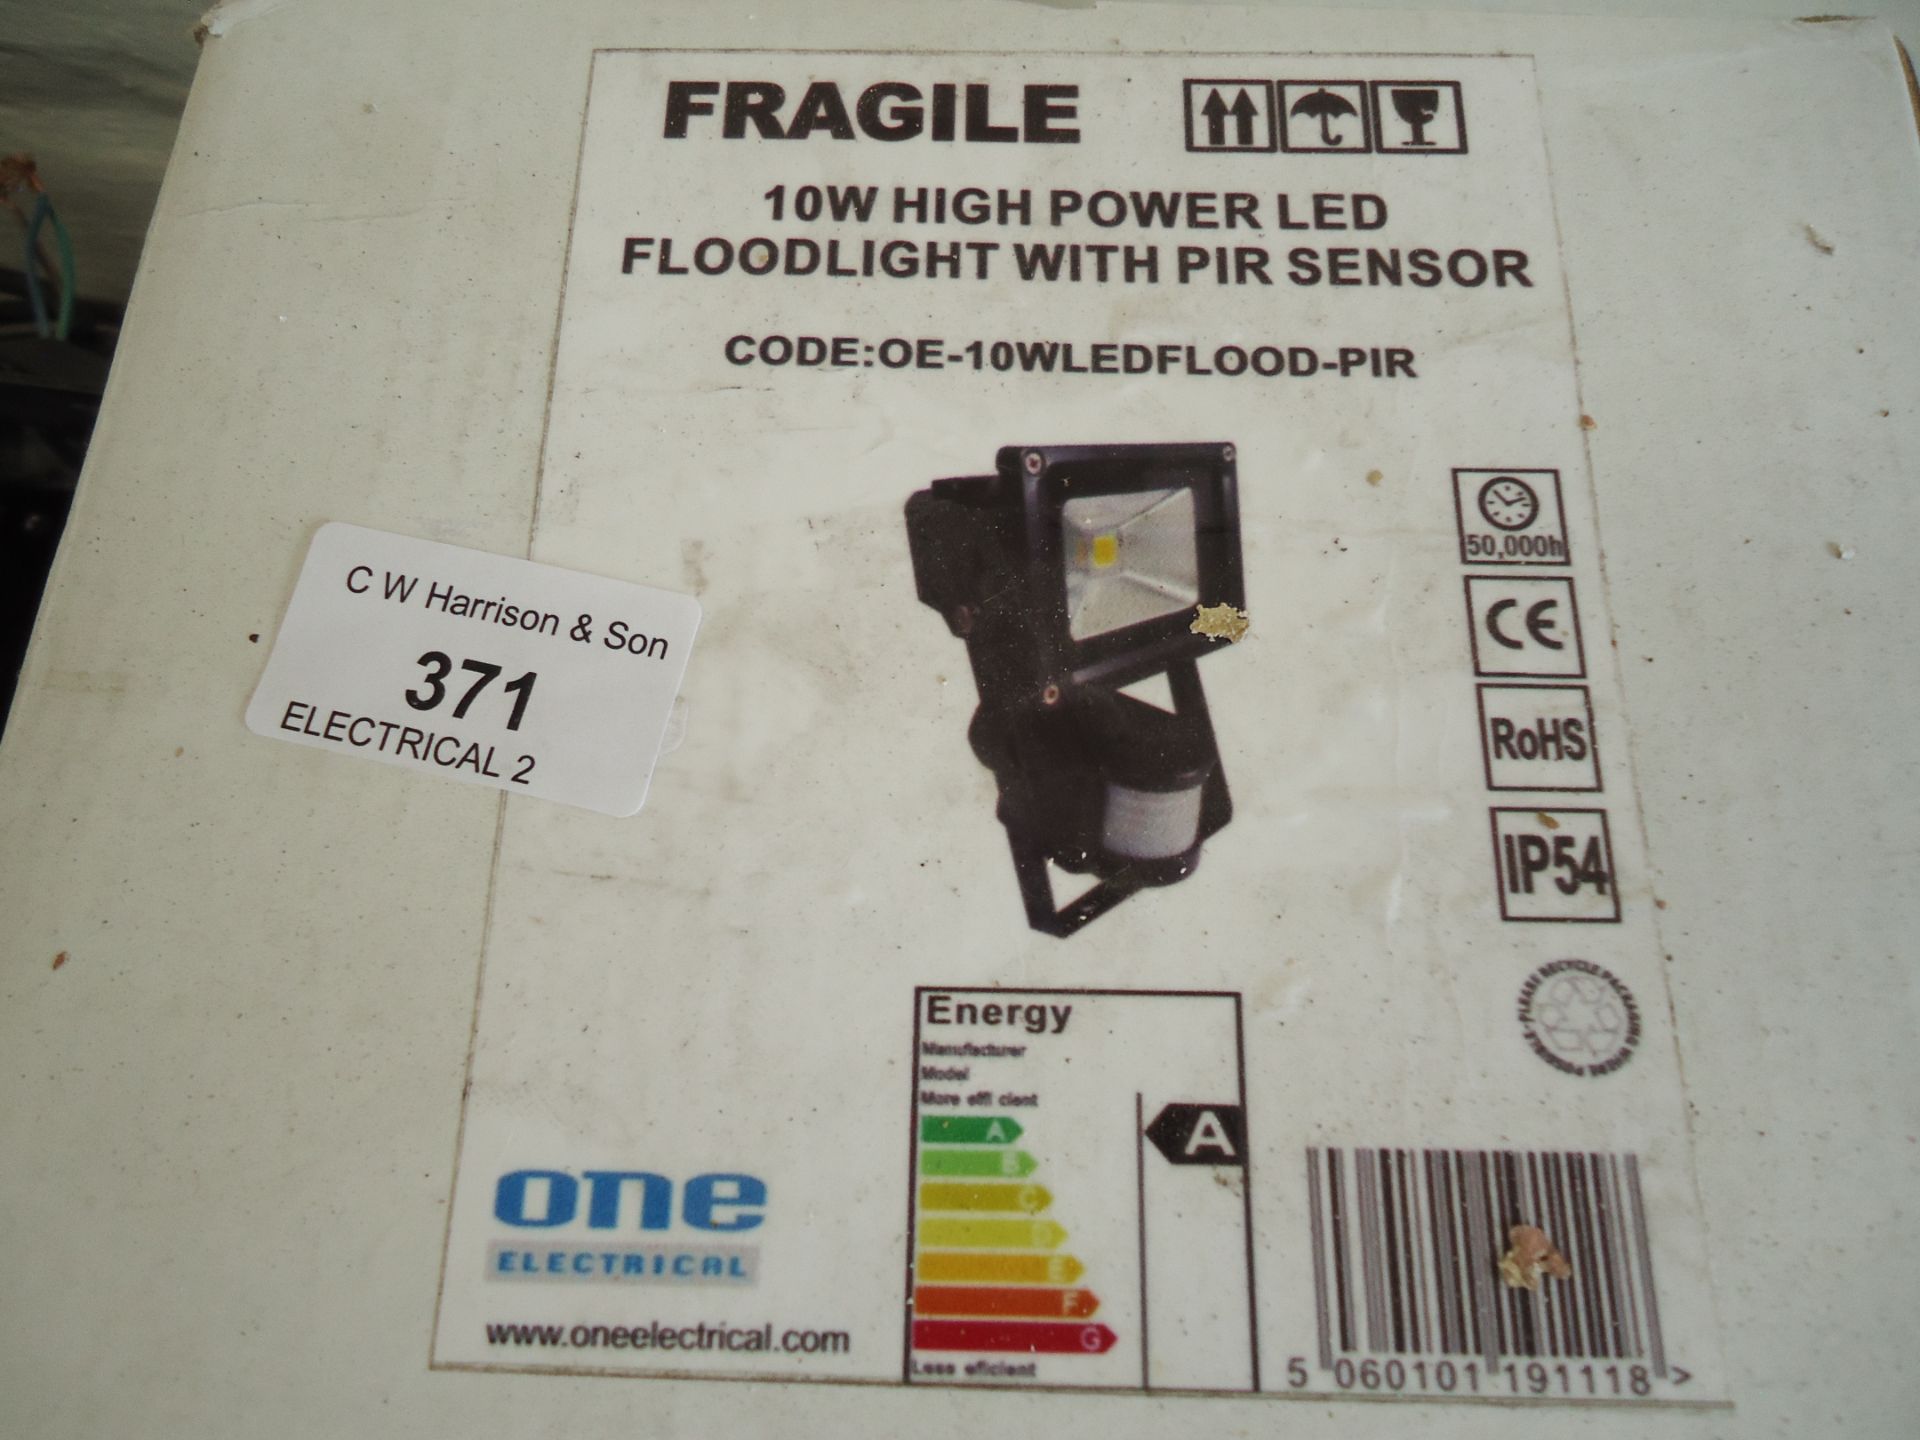 4 x 10W LED Floodlights with Sensor